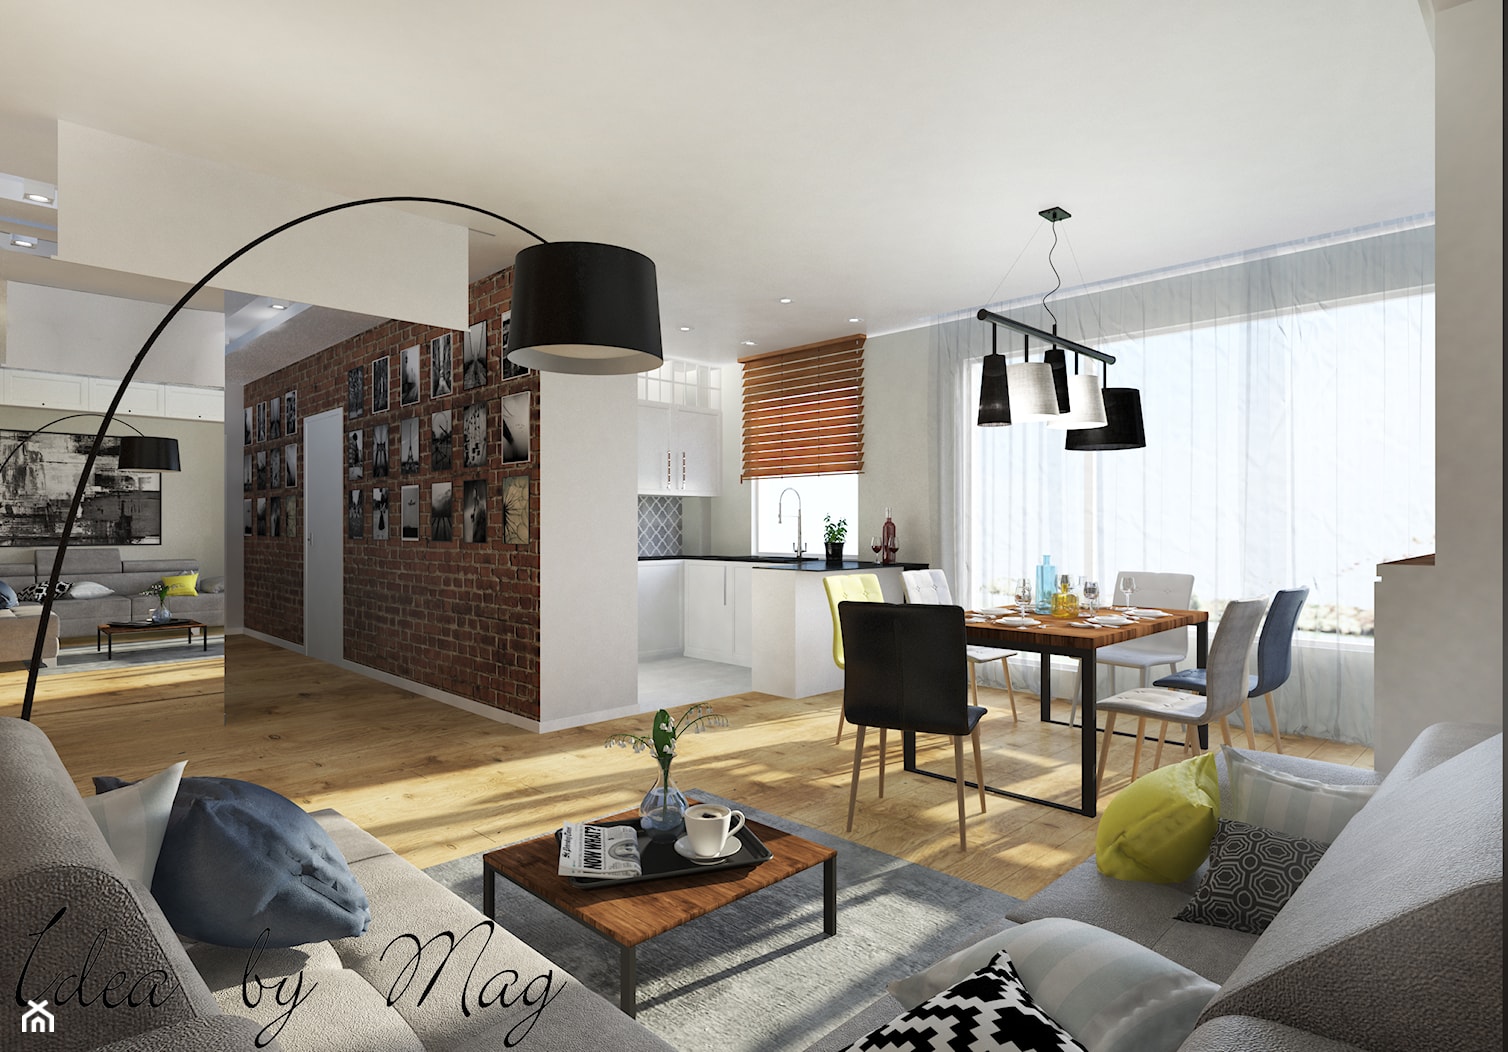 Ceglane wnętrze. - Duży biały salon z kuchnią z jadalnią, styl rustykalny - zdjęcie od Idea by Mag. - Homebook